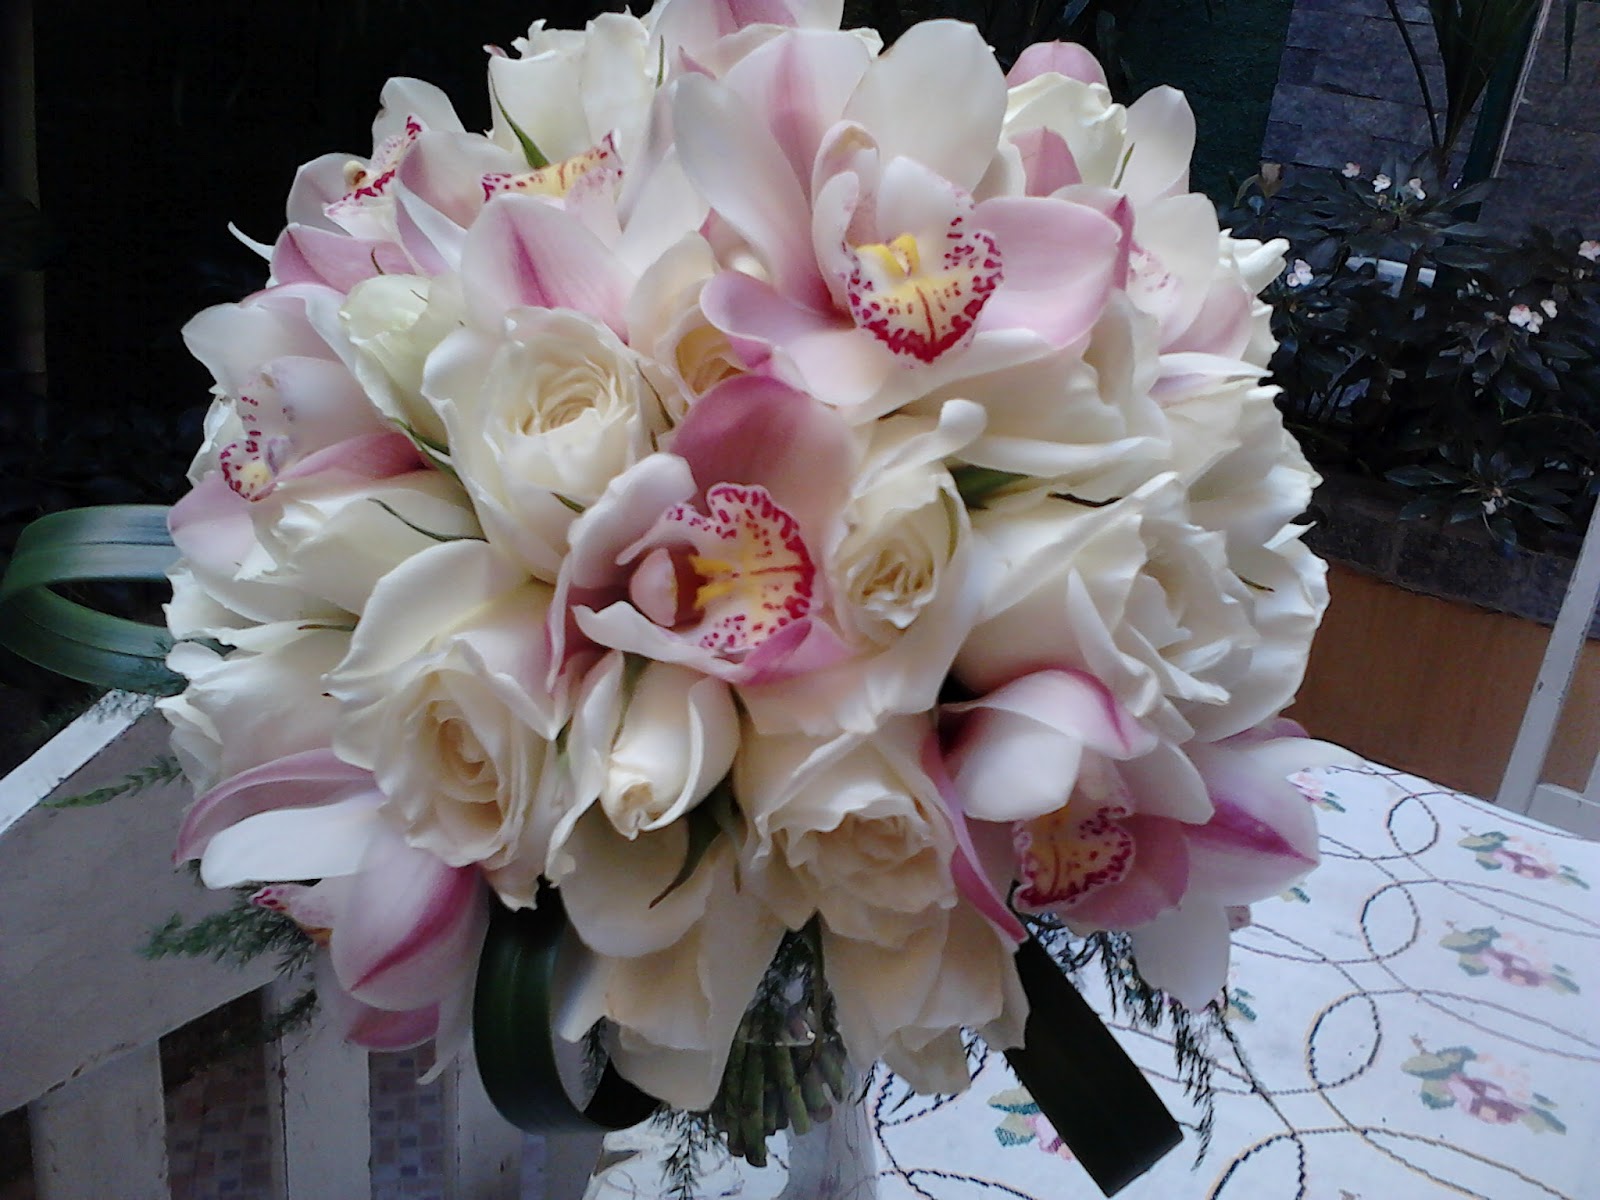 Bouquet de rosas brancas com orquídeas Cimbidium em dois tons de rosa.